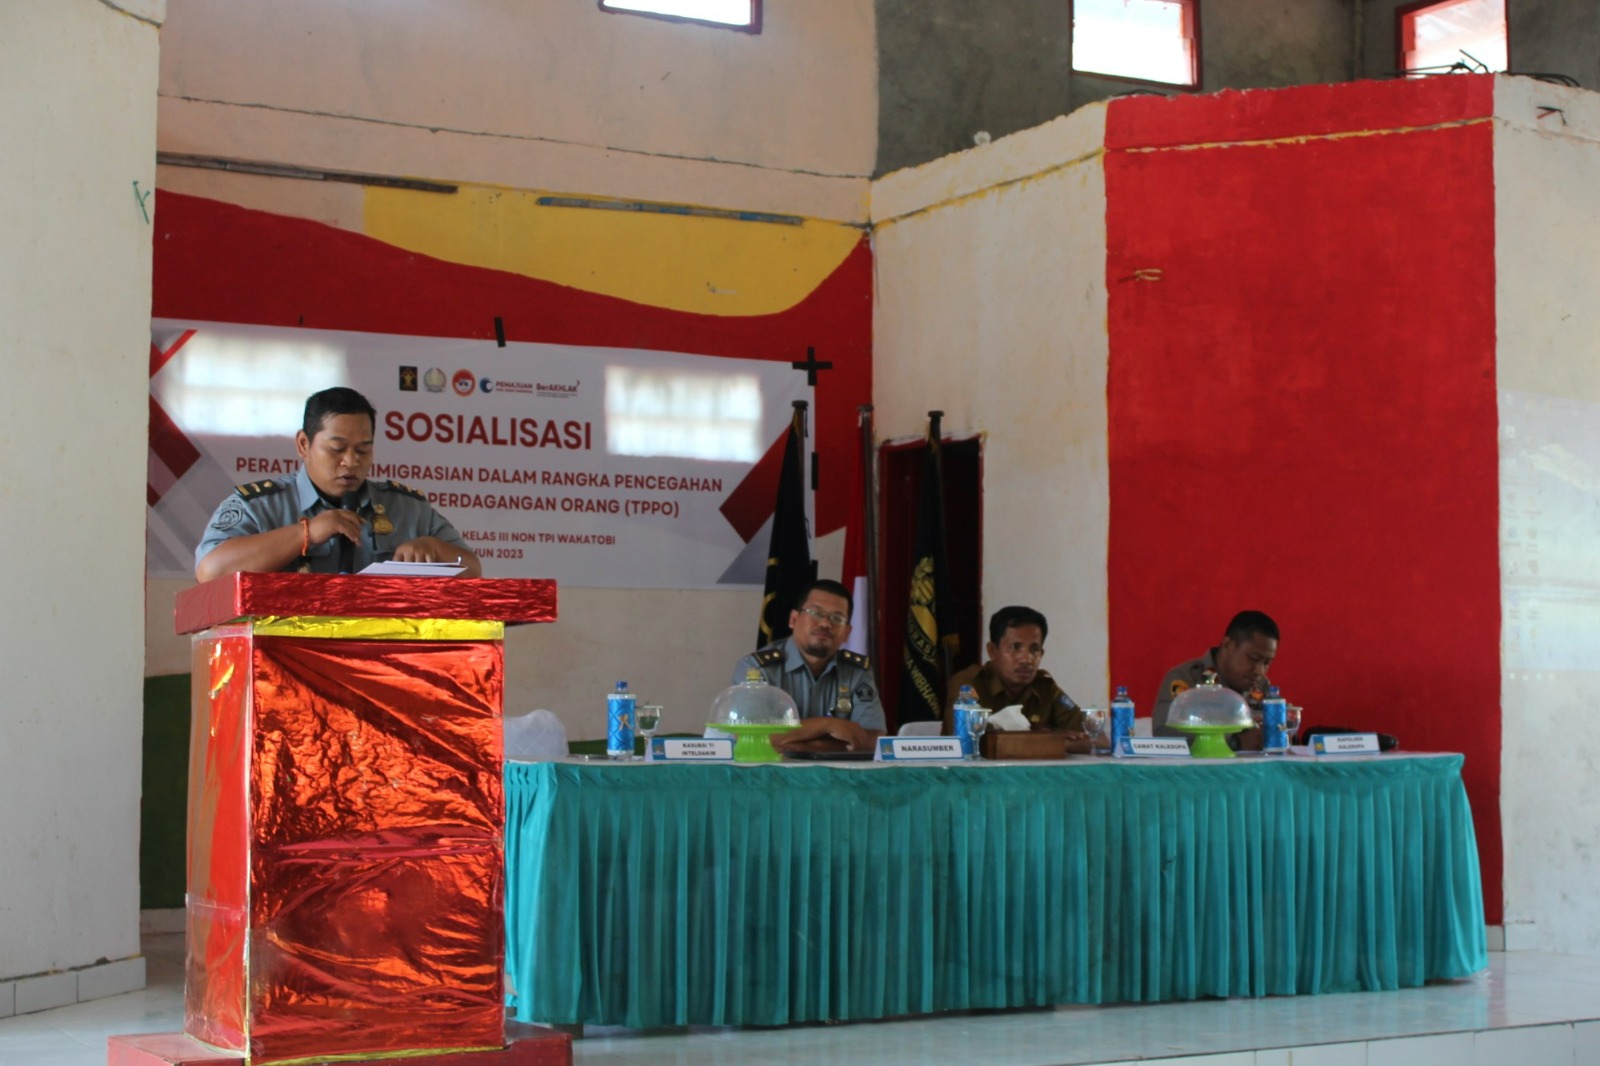 Kantor Imigrasi Wakatobi Gelar Sosialisasi di Pulau Kaledupa Cegah TPPO